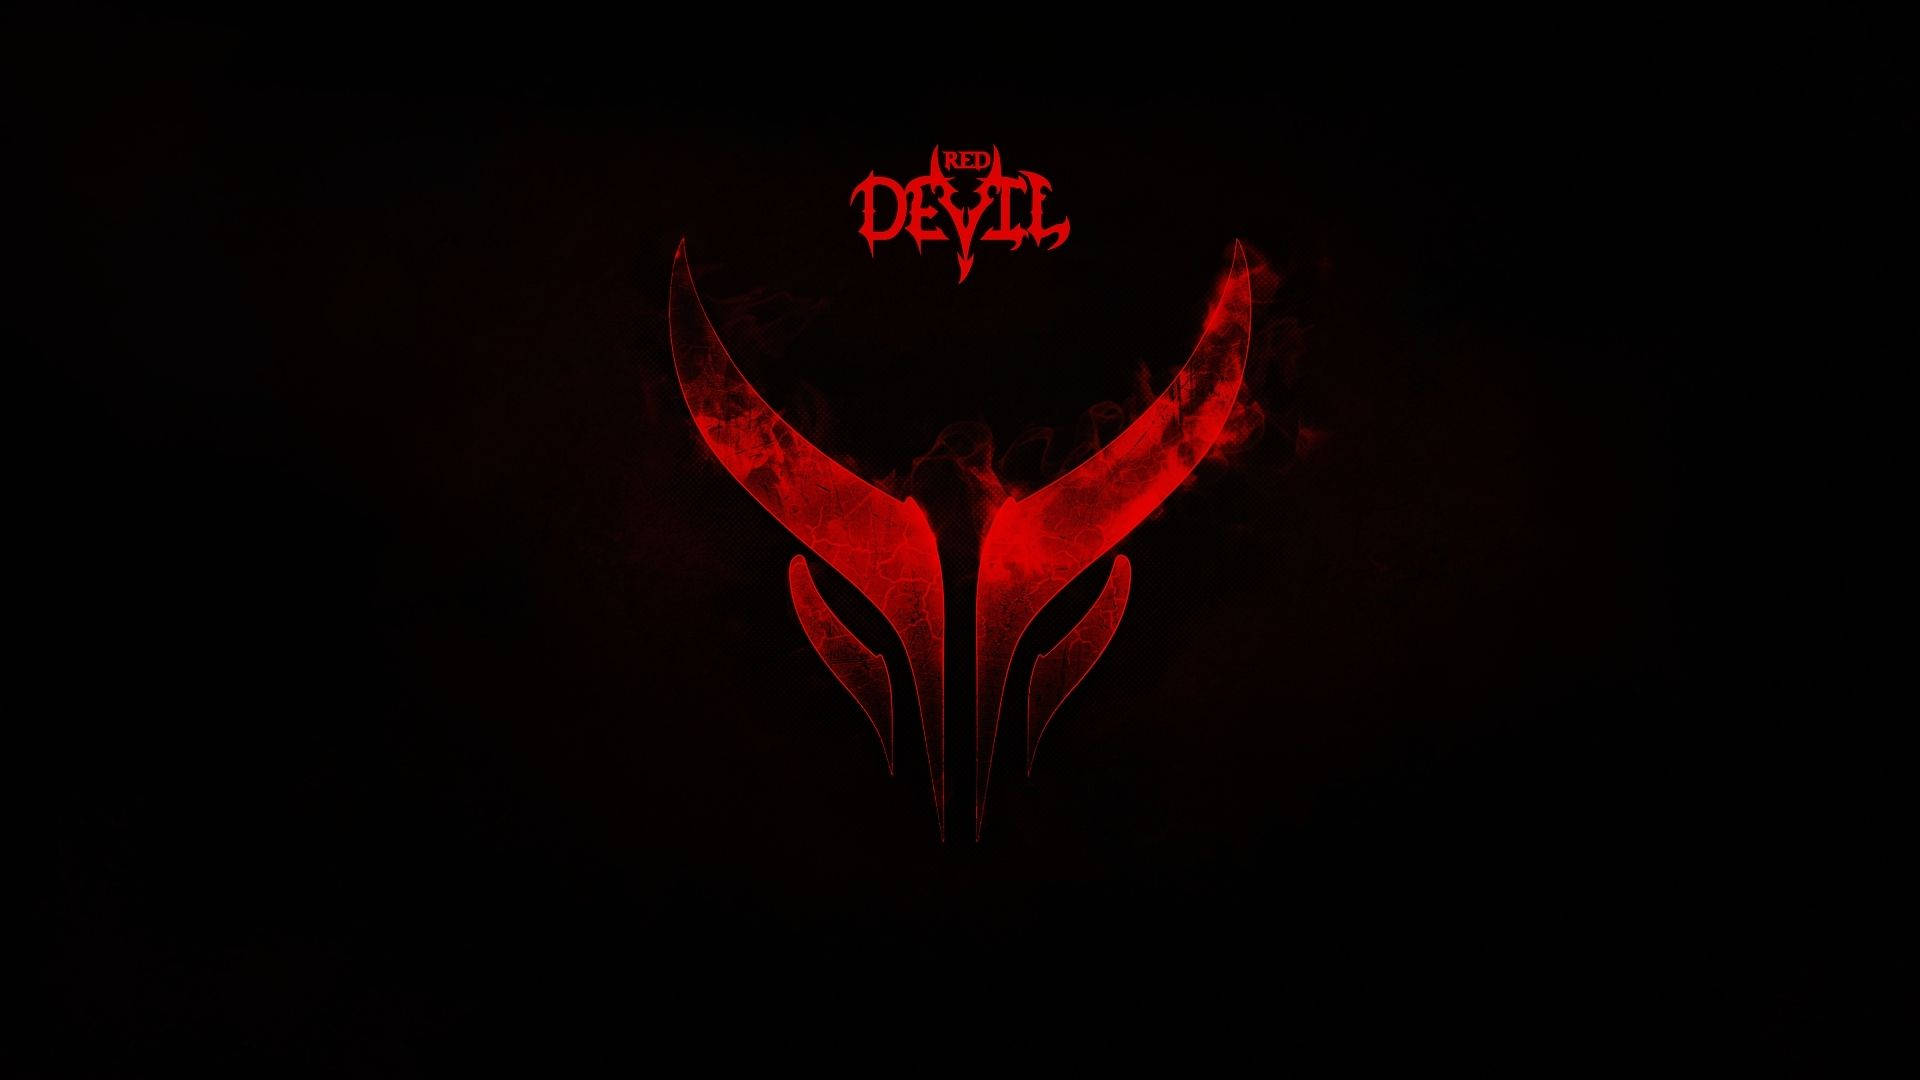 Red Devil Silhouette